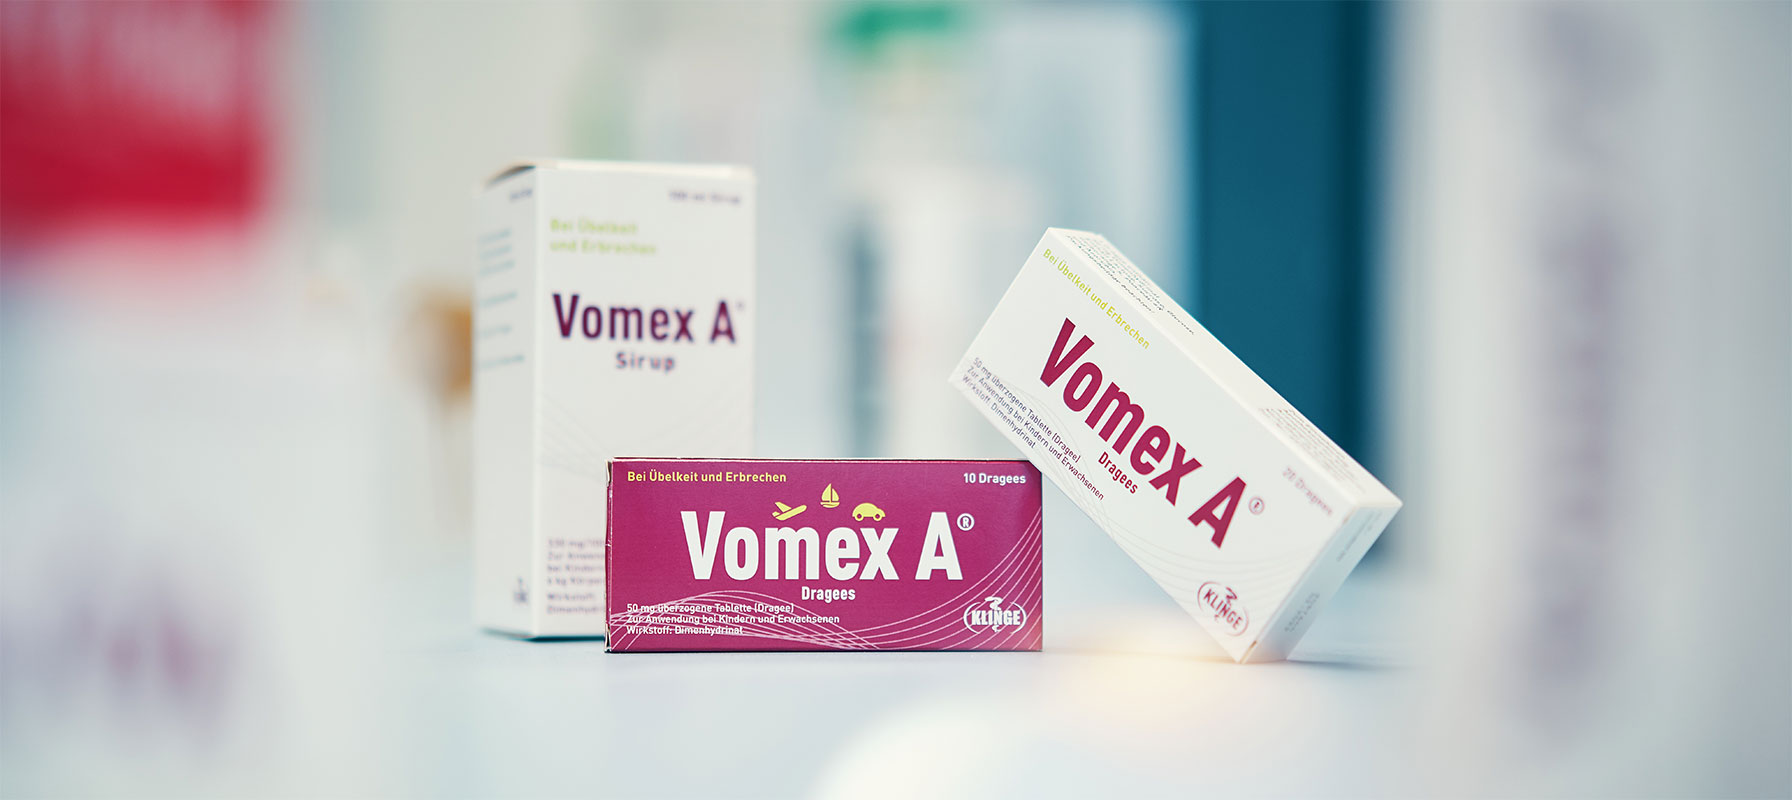 Vomex A - Welche Medikamente helfen bei Reiseübelkeit?